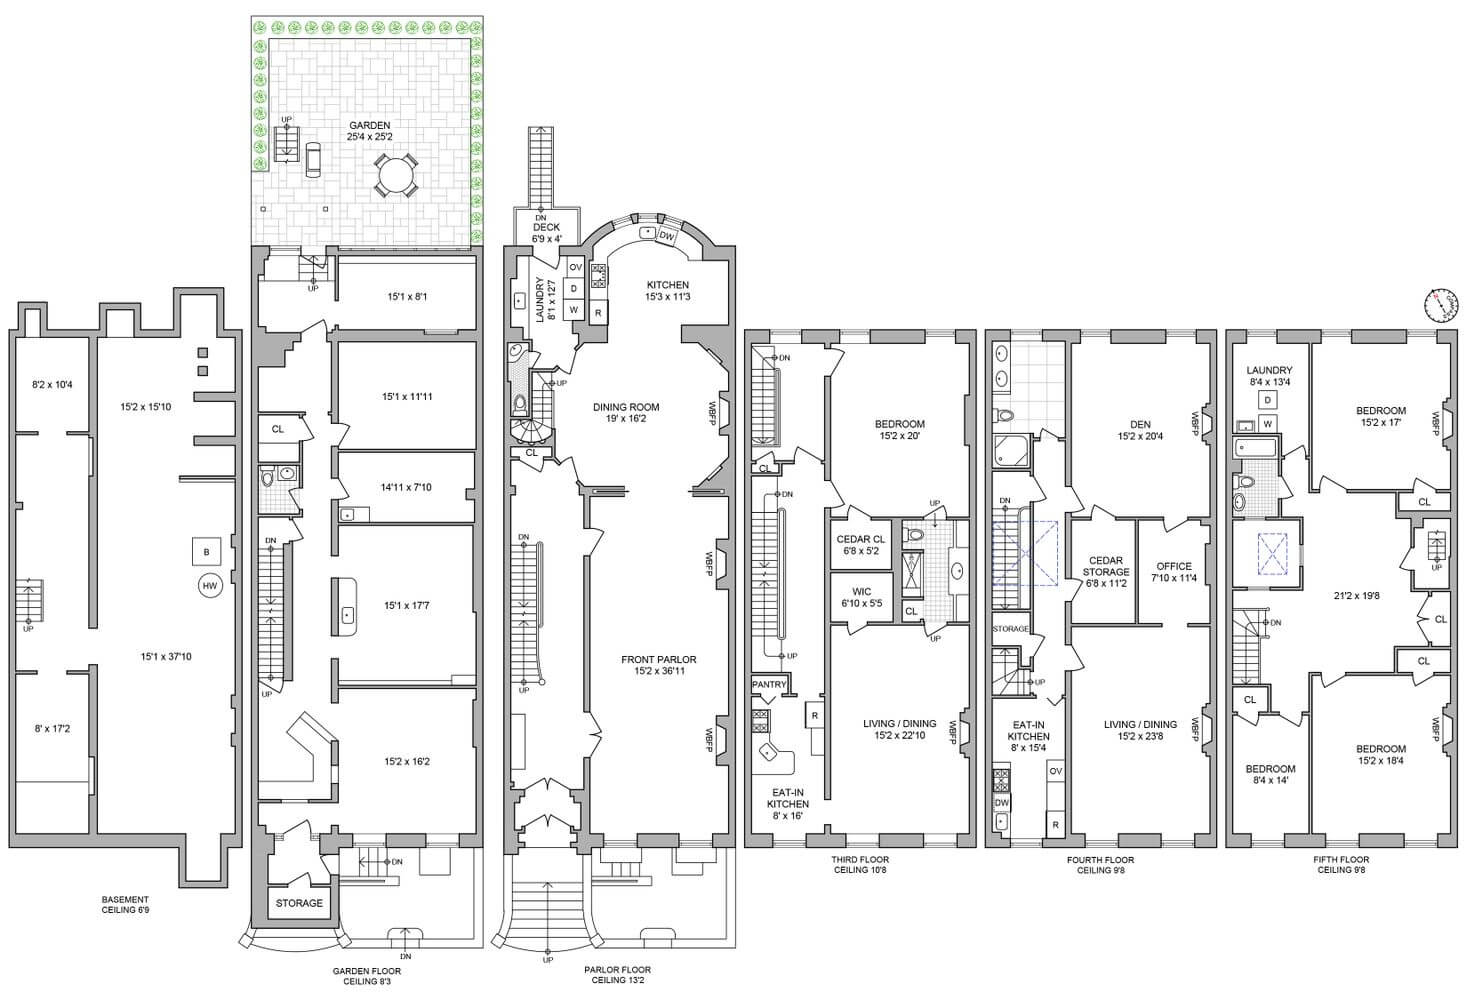 floorplan for 35 remsen street